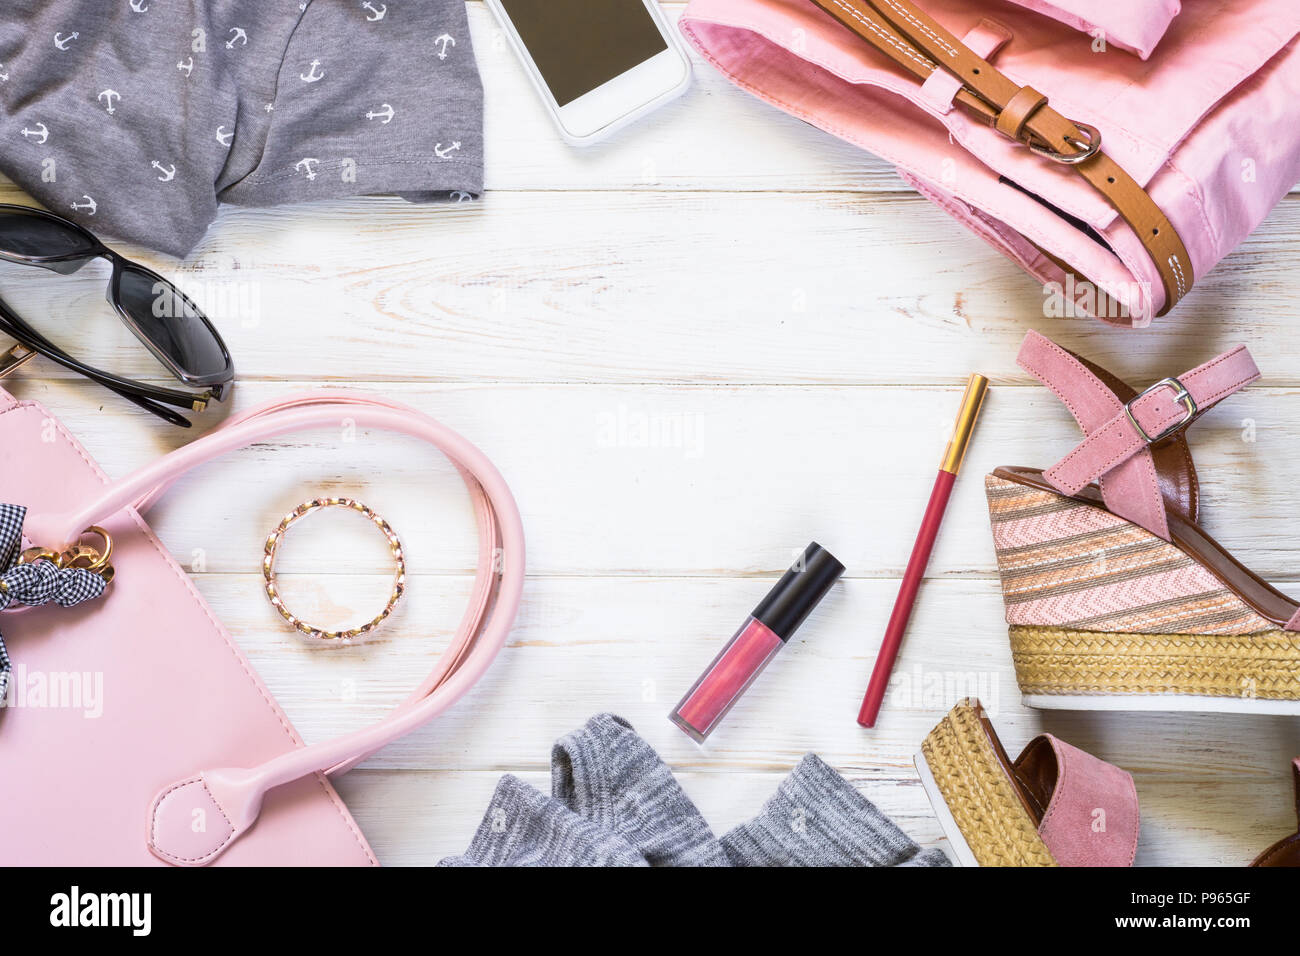 Frau Kleidung und Accessoires in rosa und grauen Farben - top, hose, Kleid,  Schuhe, Sonnenbrille und Lippenstift auf weißem Hintergrund. Mode Schönheit  backgr Stockfotografie - Alamy